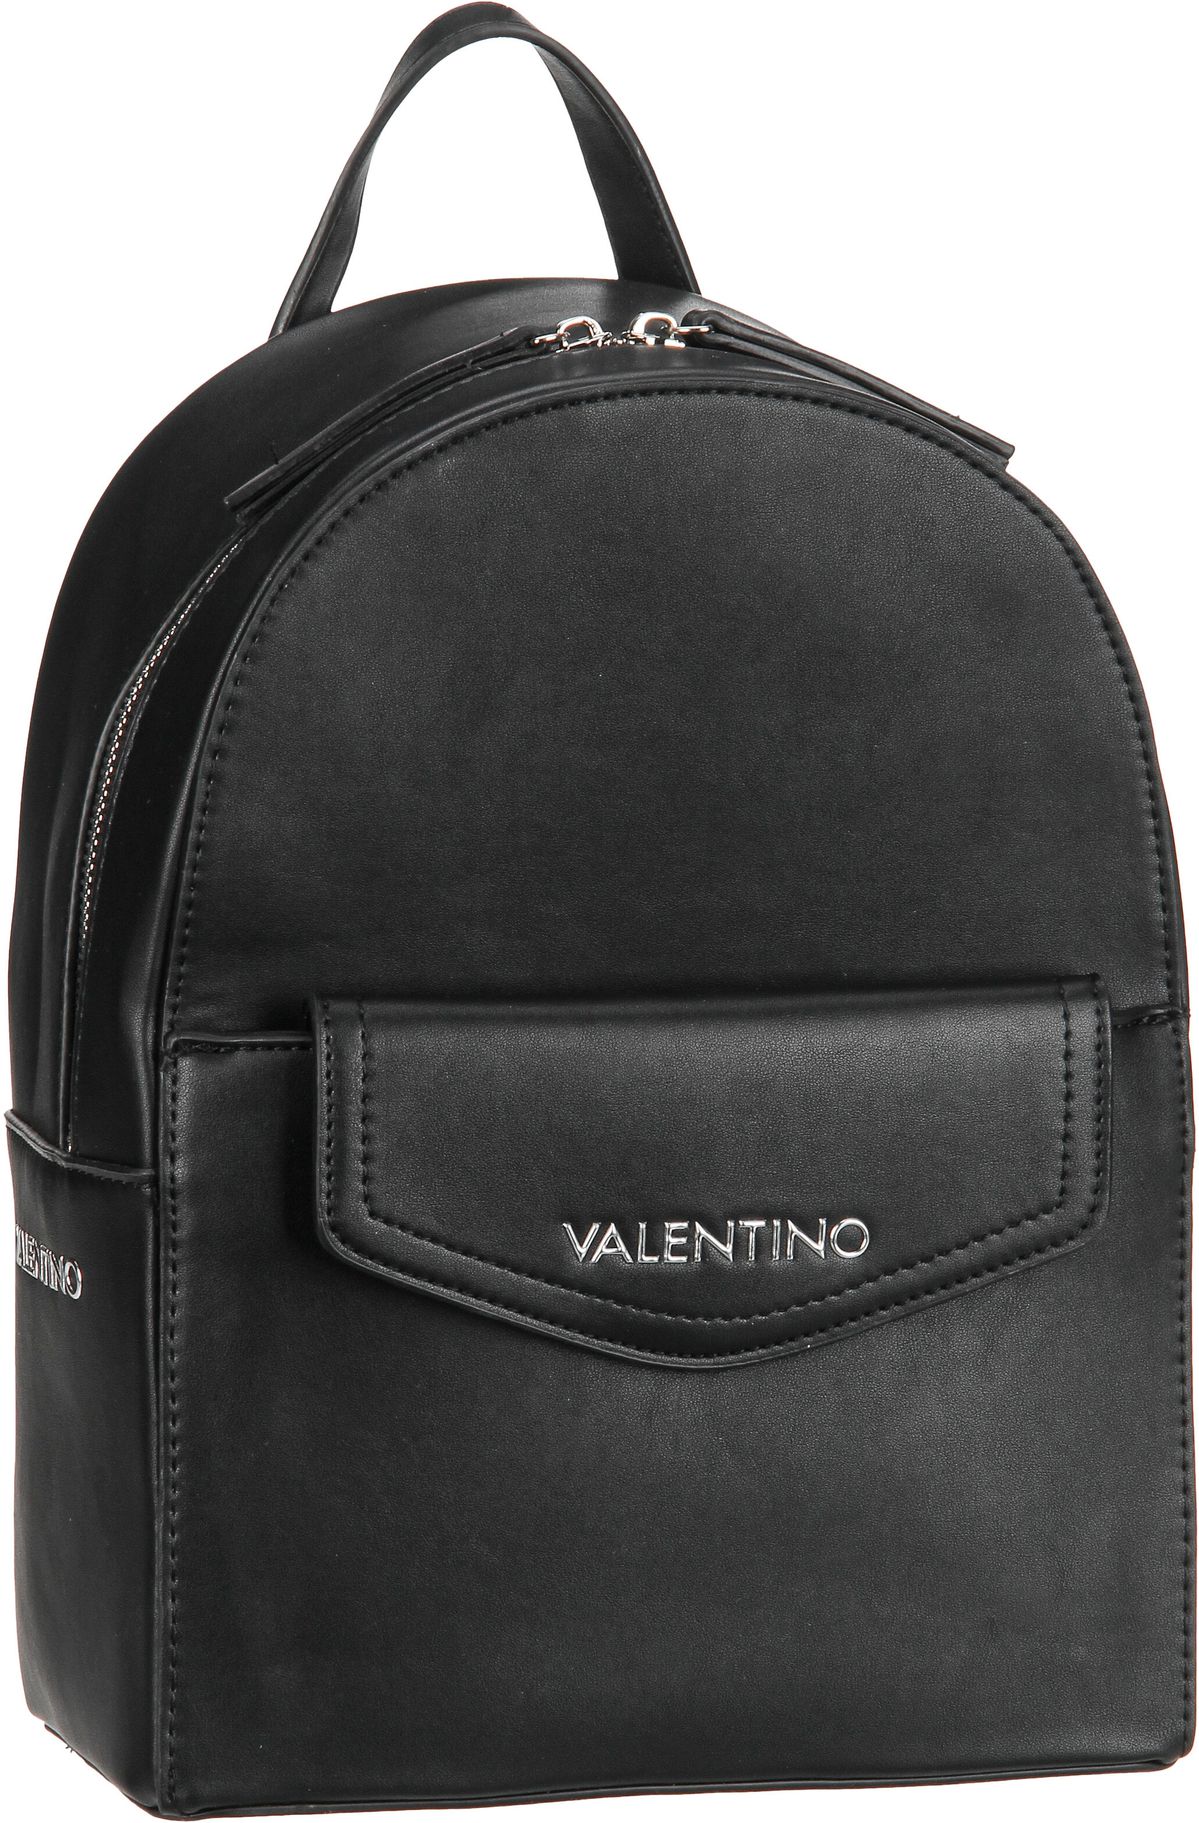 Valentino Hudson RE P02  in Schwarz (7.9 Liter), Rucksack / Backpack